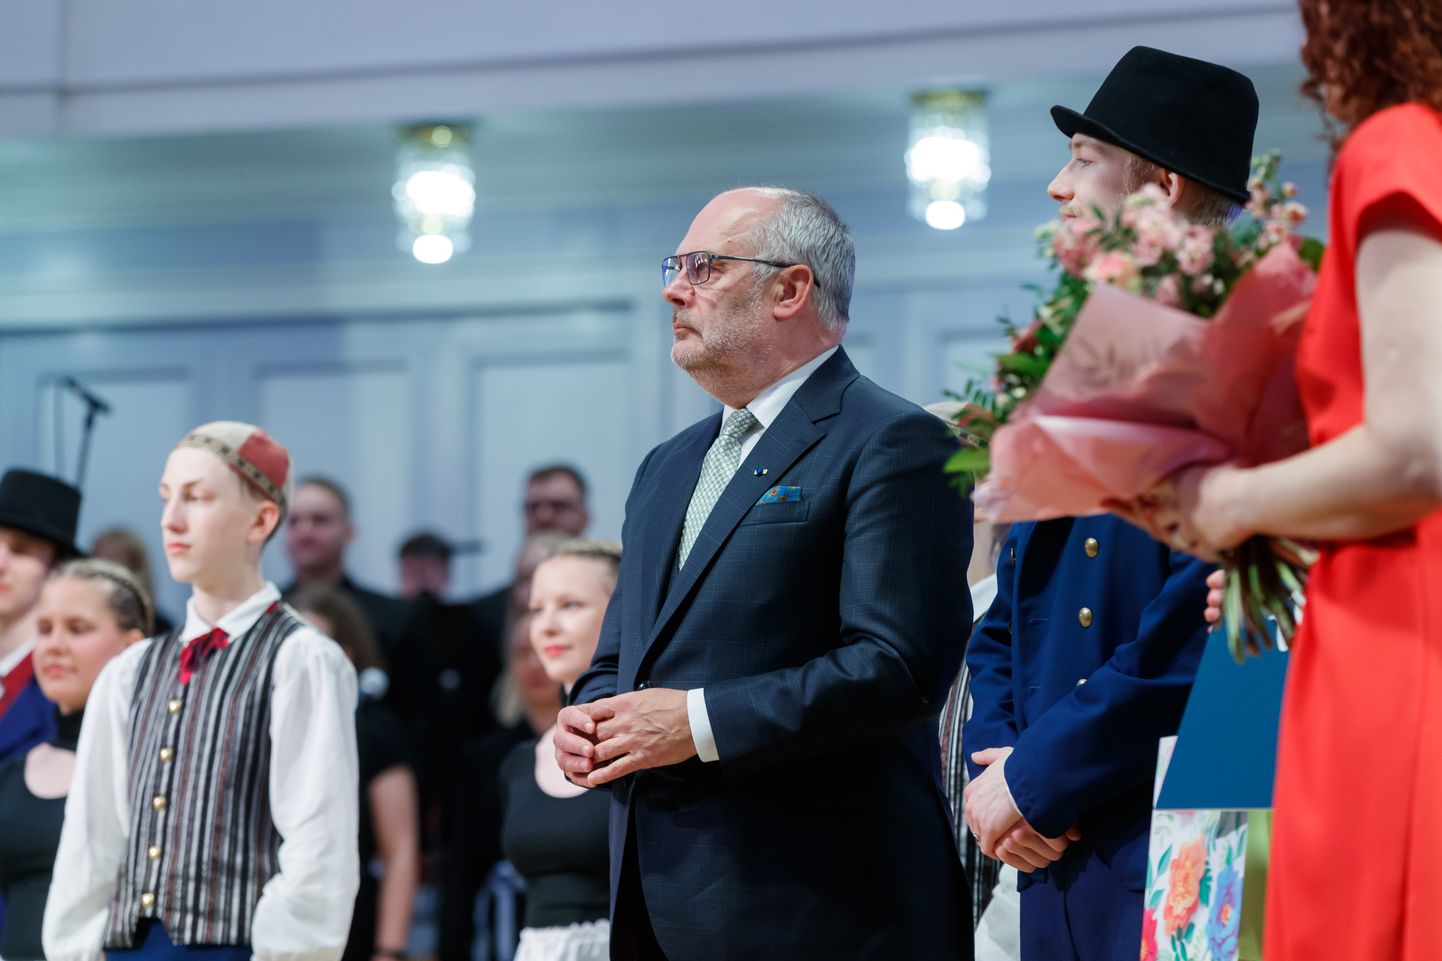 Союз женщин Эстонии выбрал президента Союза многодетных семей Эстонии, мать четверых детей Ааге Ыунап матерью 2022 года. Президент Алар Карис в прошлом году вручает титул в концертном зале Estonia.